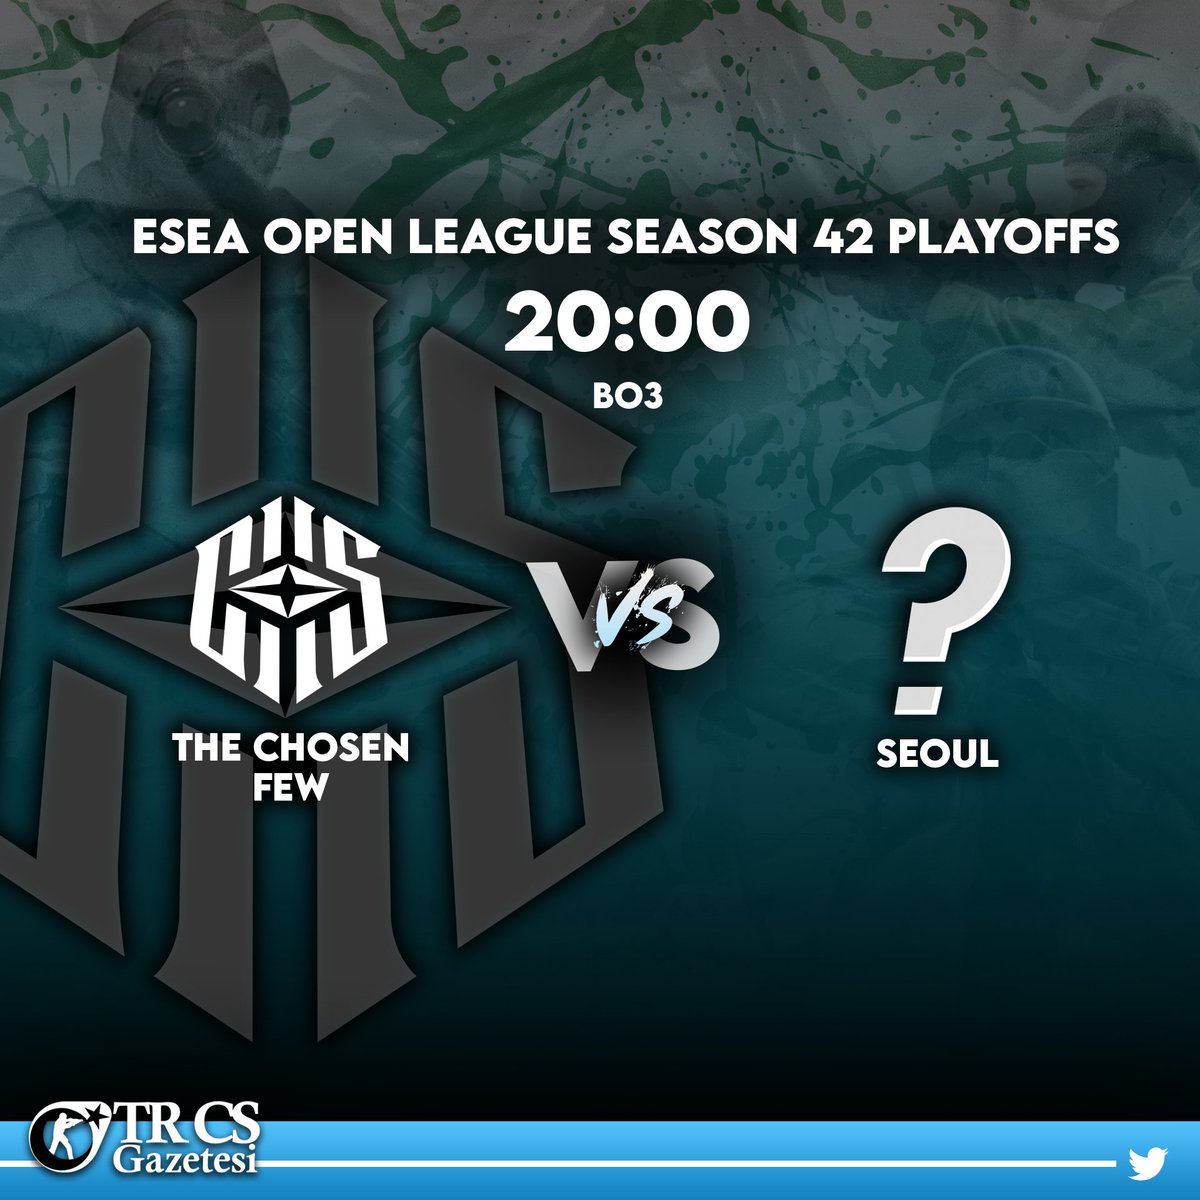 🔷Temsilcimiz 🇹🇷The Chosen Few Esports, ESEA Main League yükselme maçında Ligi 3. sırada tamamlayan seoul takımı ile karşılaşacak!

🏟 ESEA Season 42: Open Play-offs
🕙 20.00 TSİ 🗺 Bo3
📺 Yayın bilgisi bulunmamaktadır.